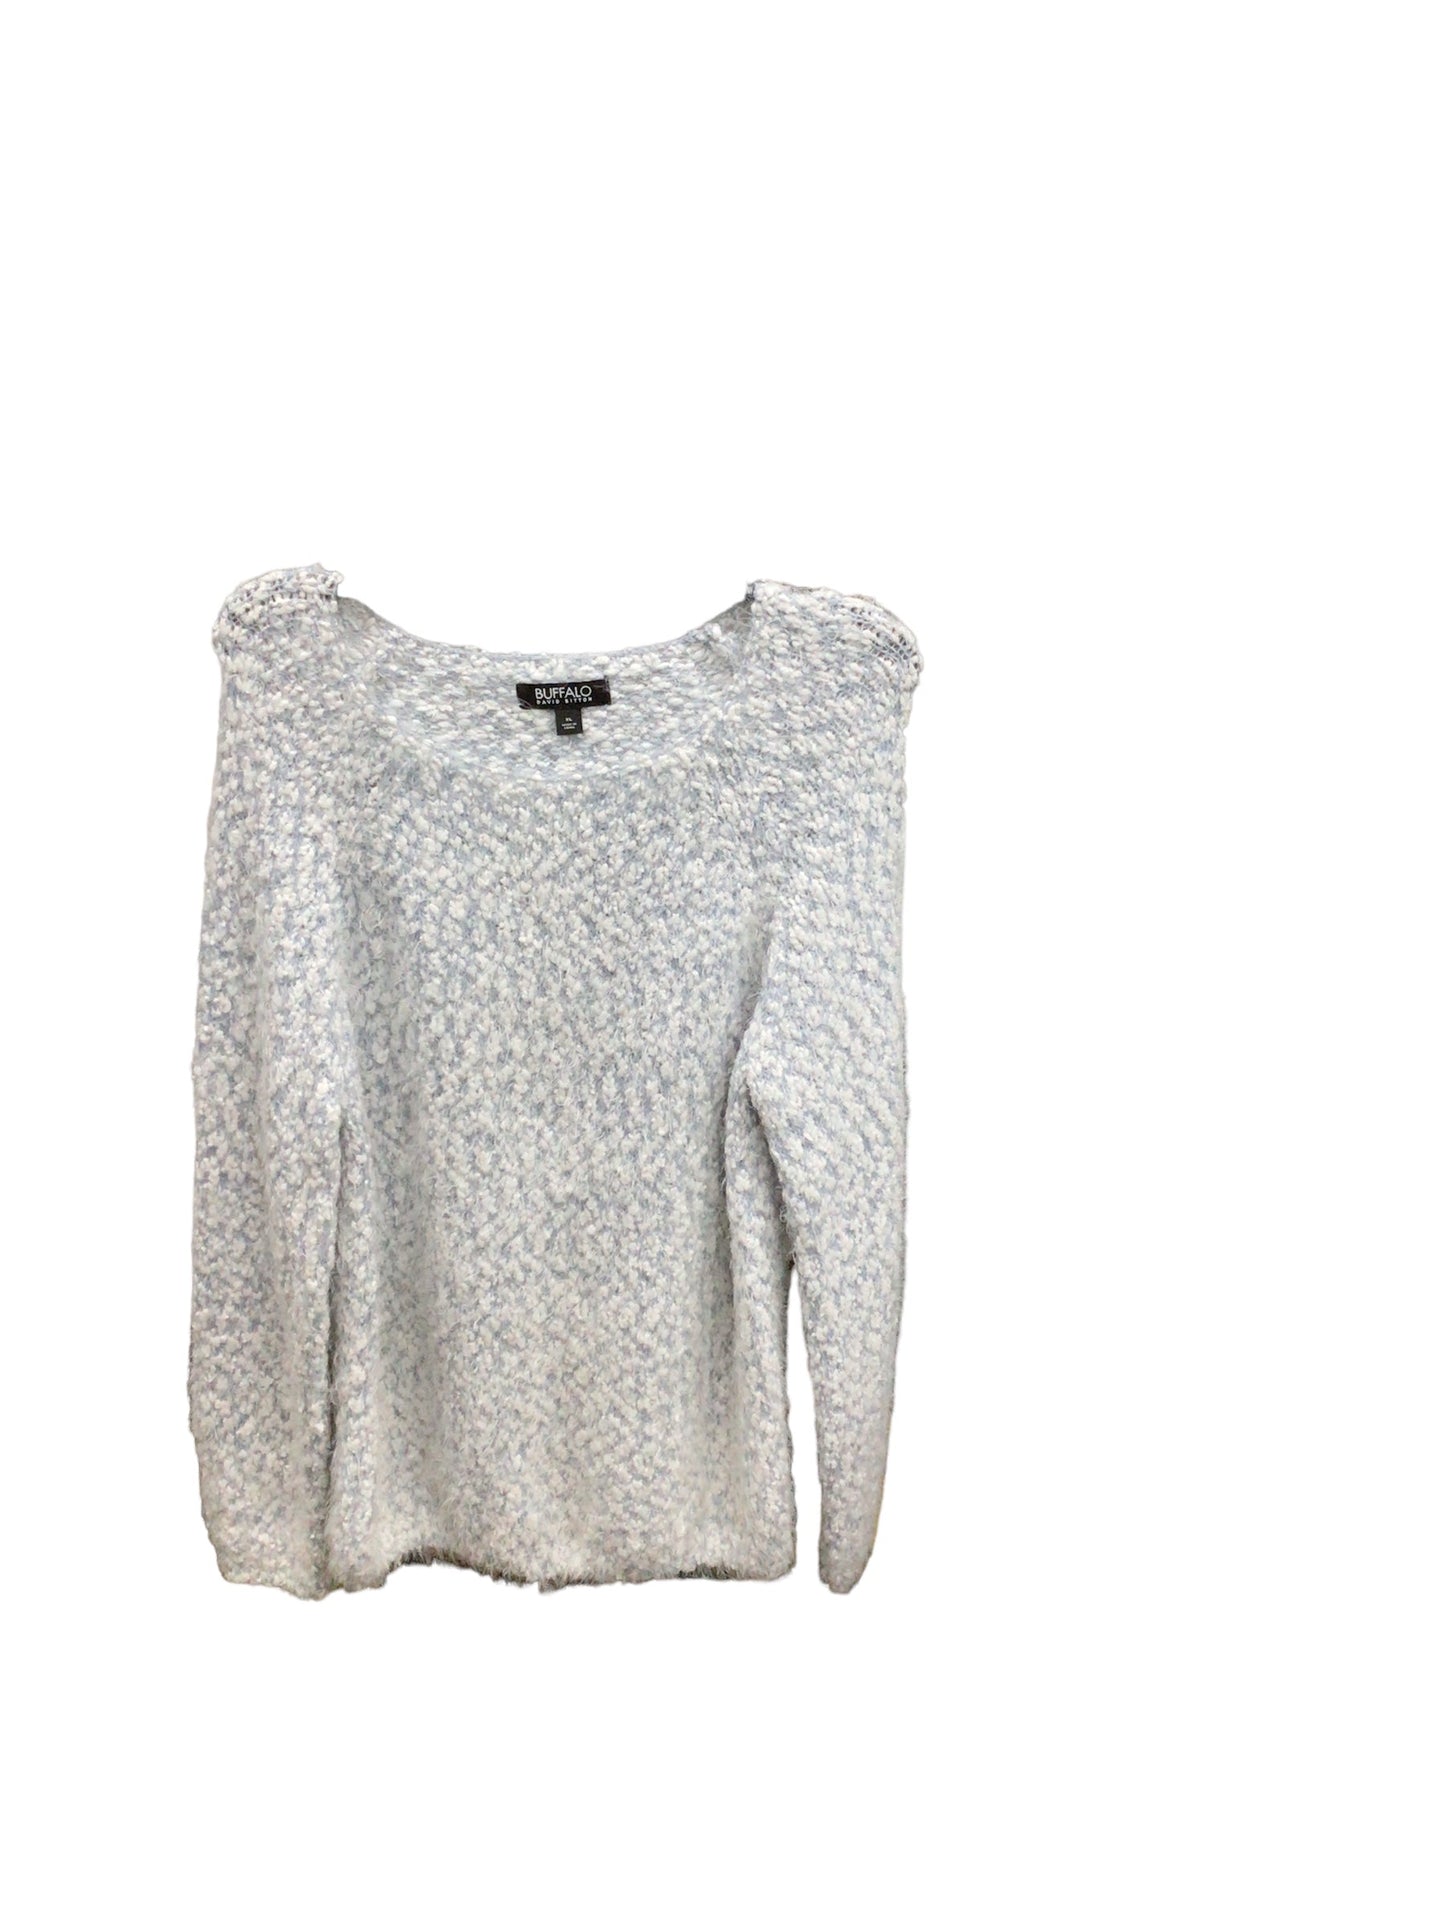 Sweater By Buffalo David Bitton  Size: Xl